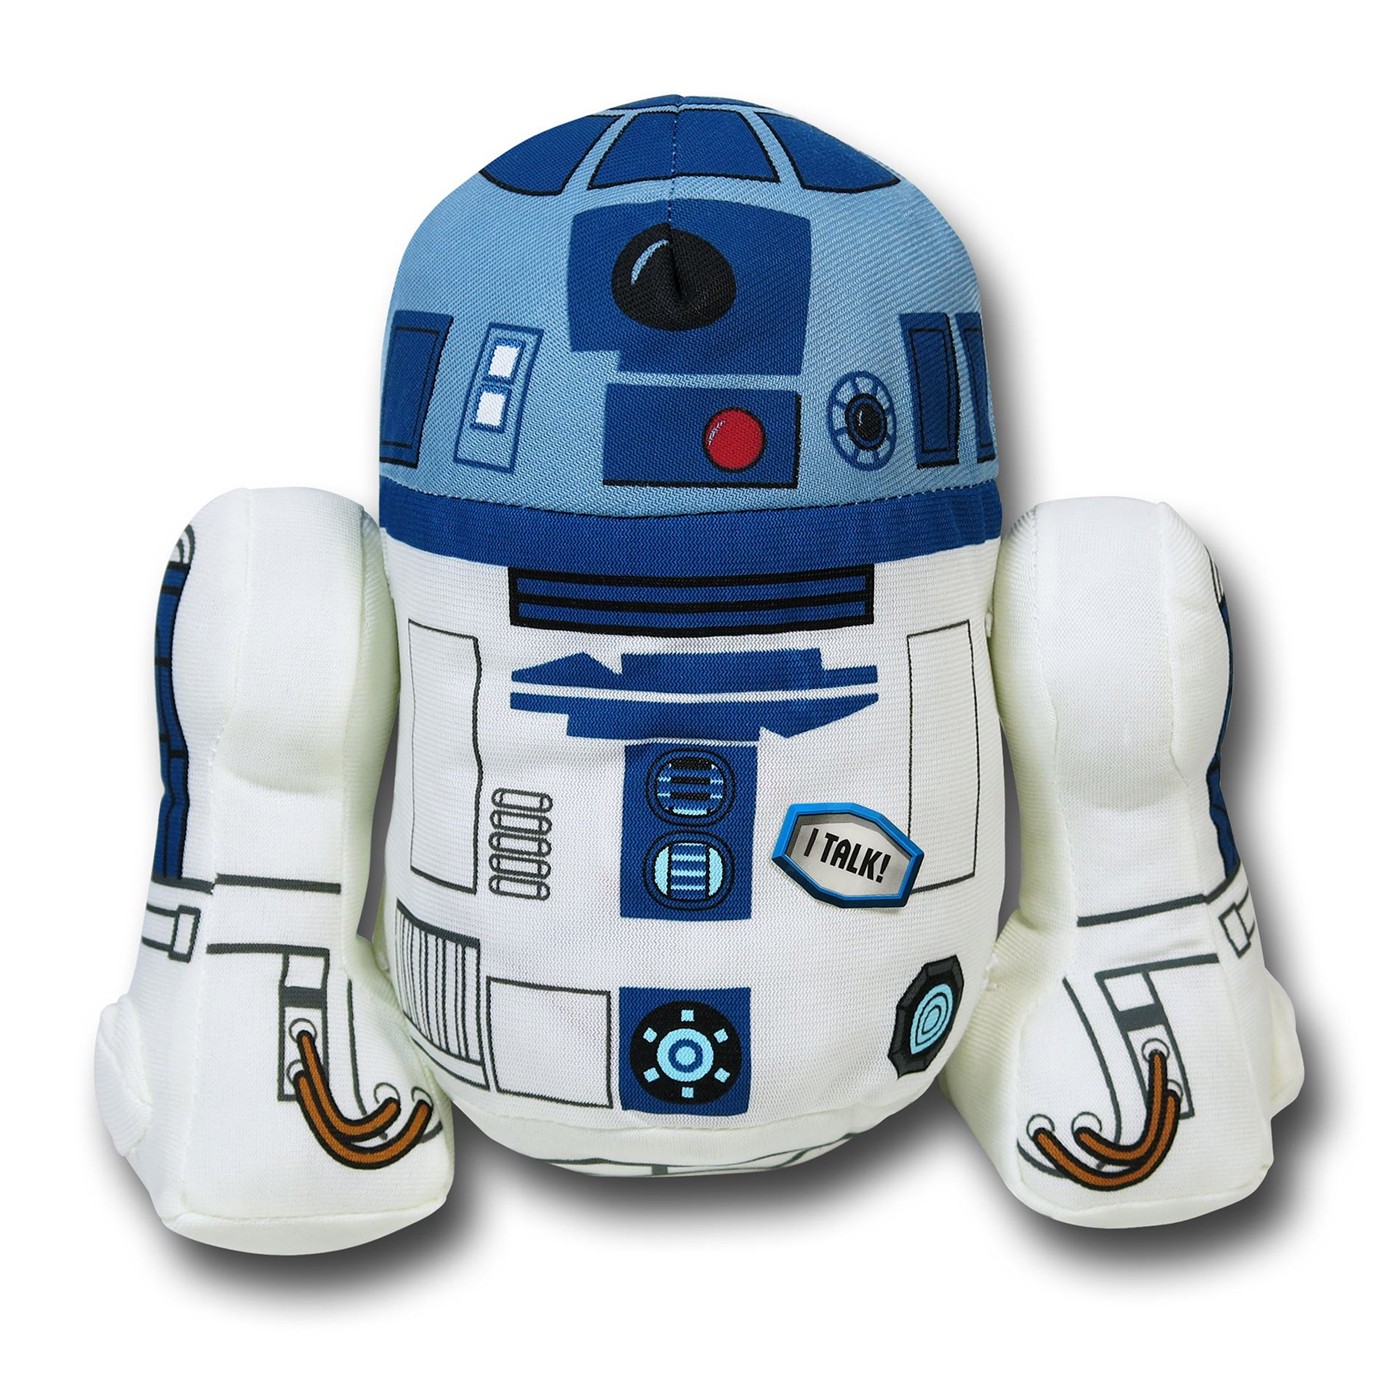 Star Wars R2D2 Talking Plush Toy